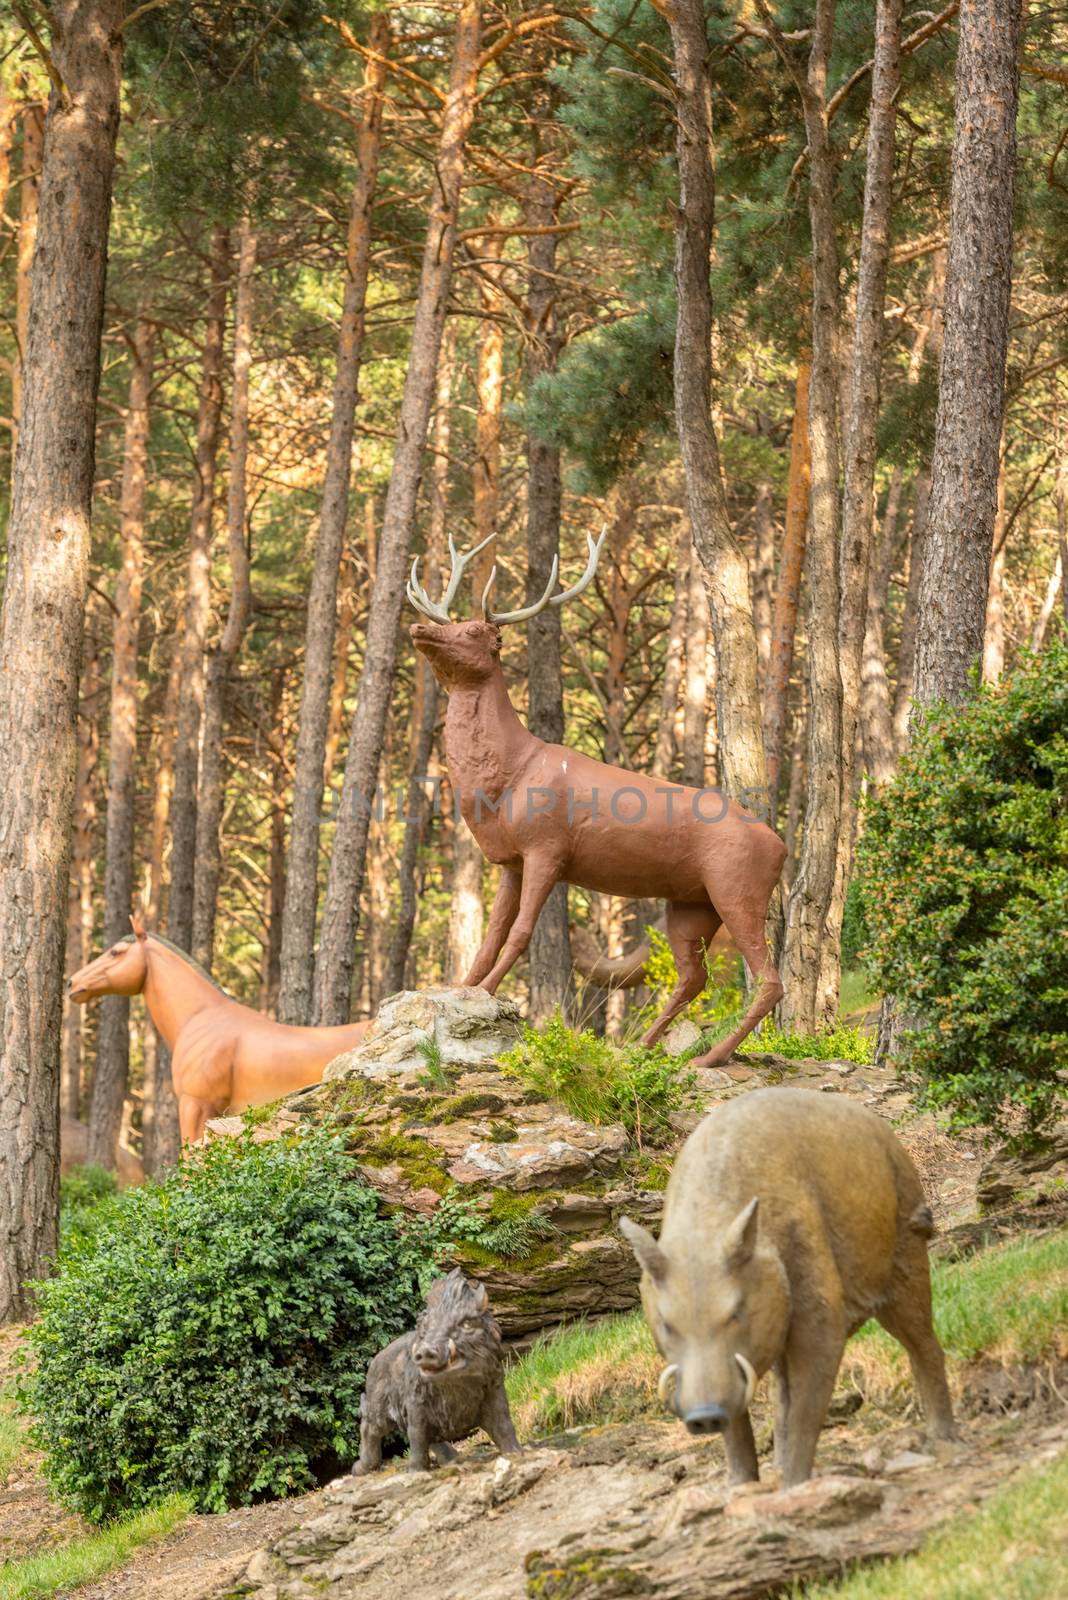 Sculptures in Jardins de Juberri in summer 2020 in the Pyrenees of Andorra. by martinscphoto